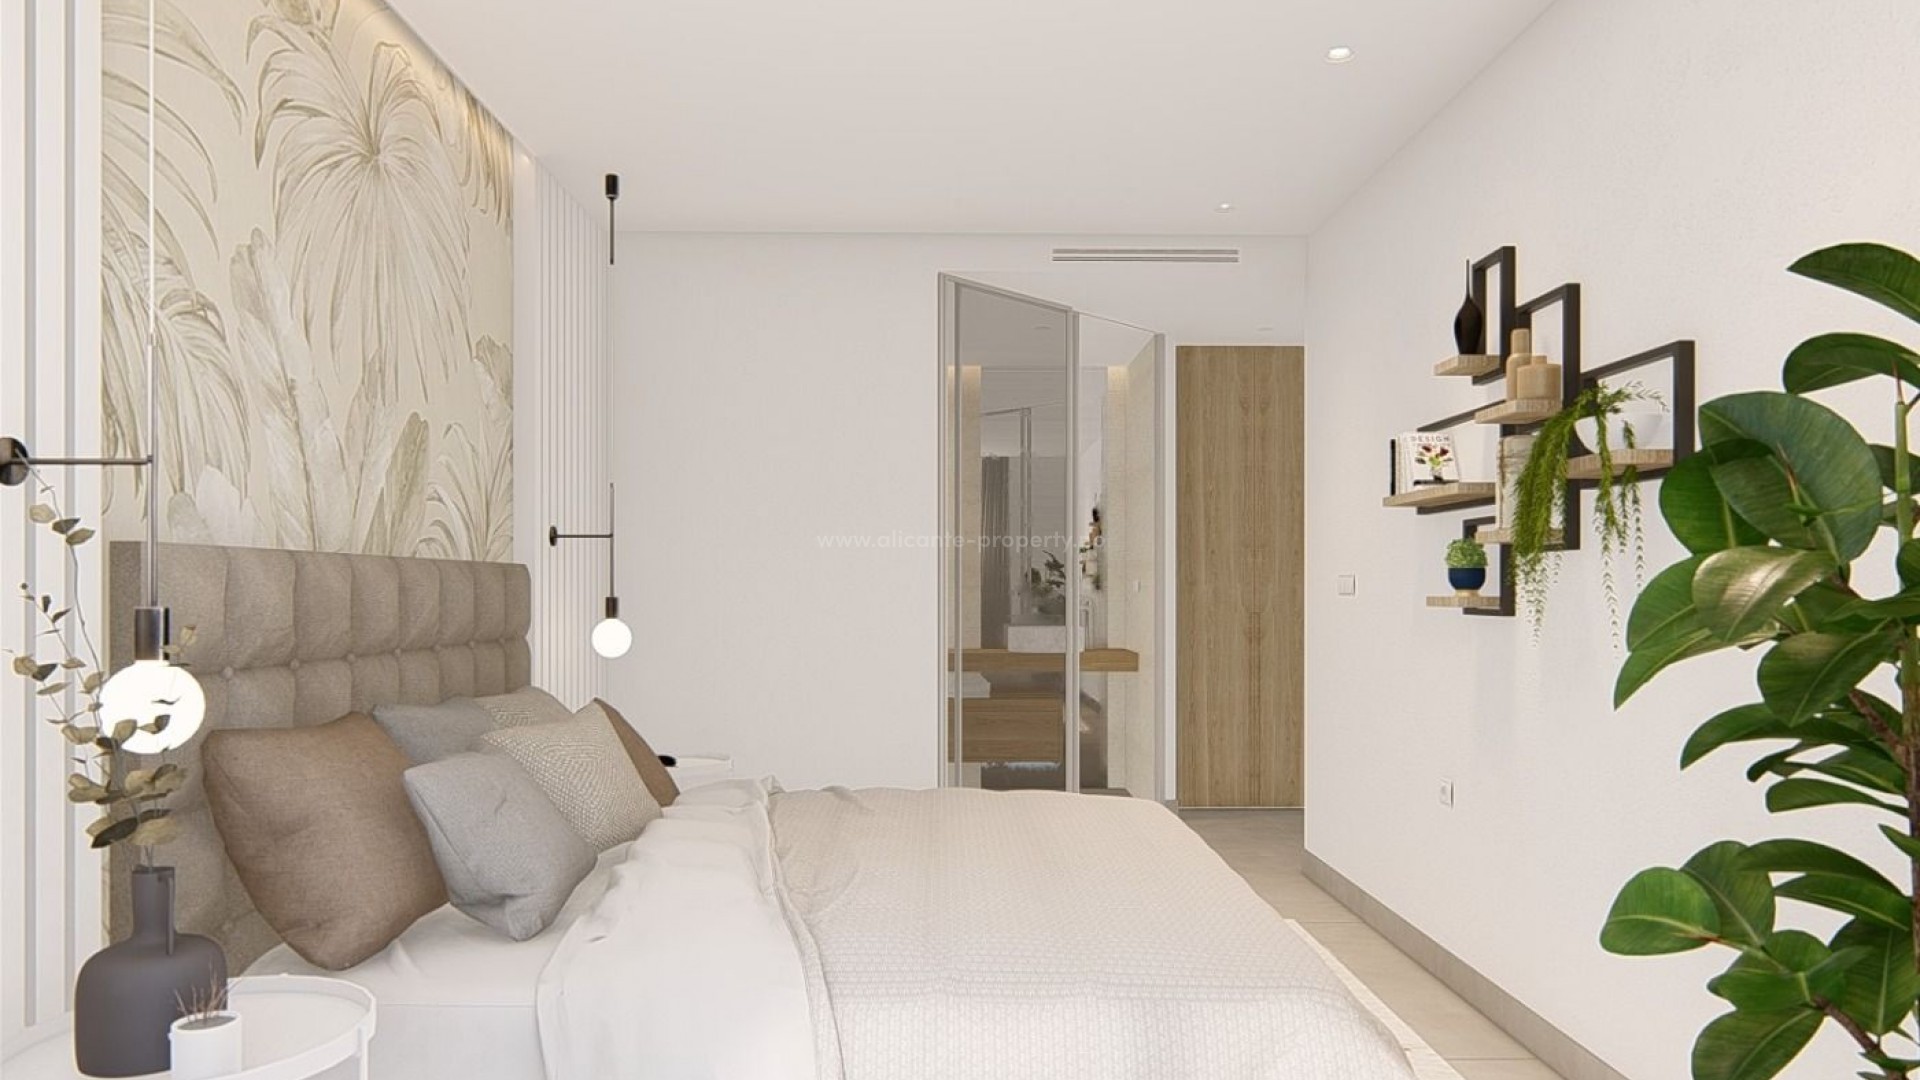 Nybygg boligkompleks med leiligheter i El Raso, Guardamar del Segura, 2/3 soverom, 2 bad, felles store åpne områder, natur og svømmebassenger